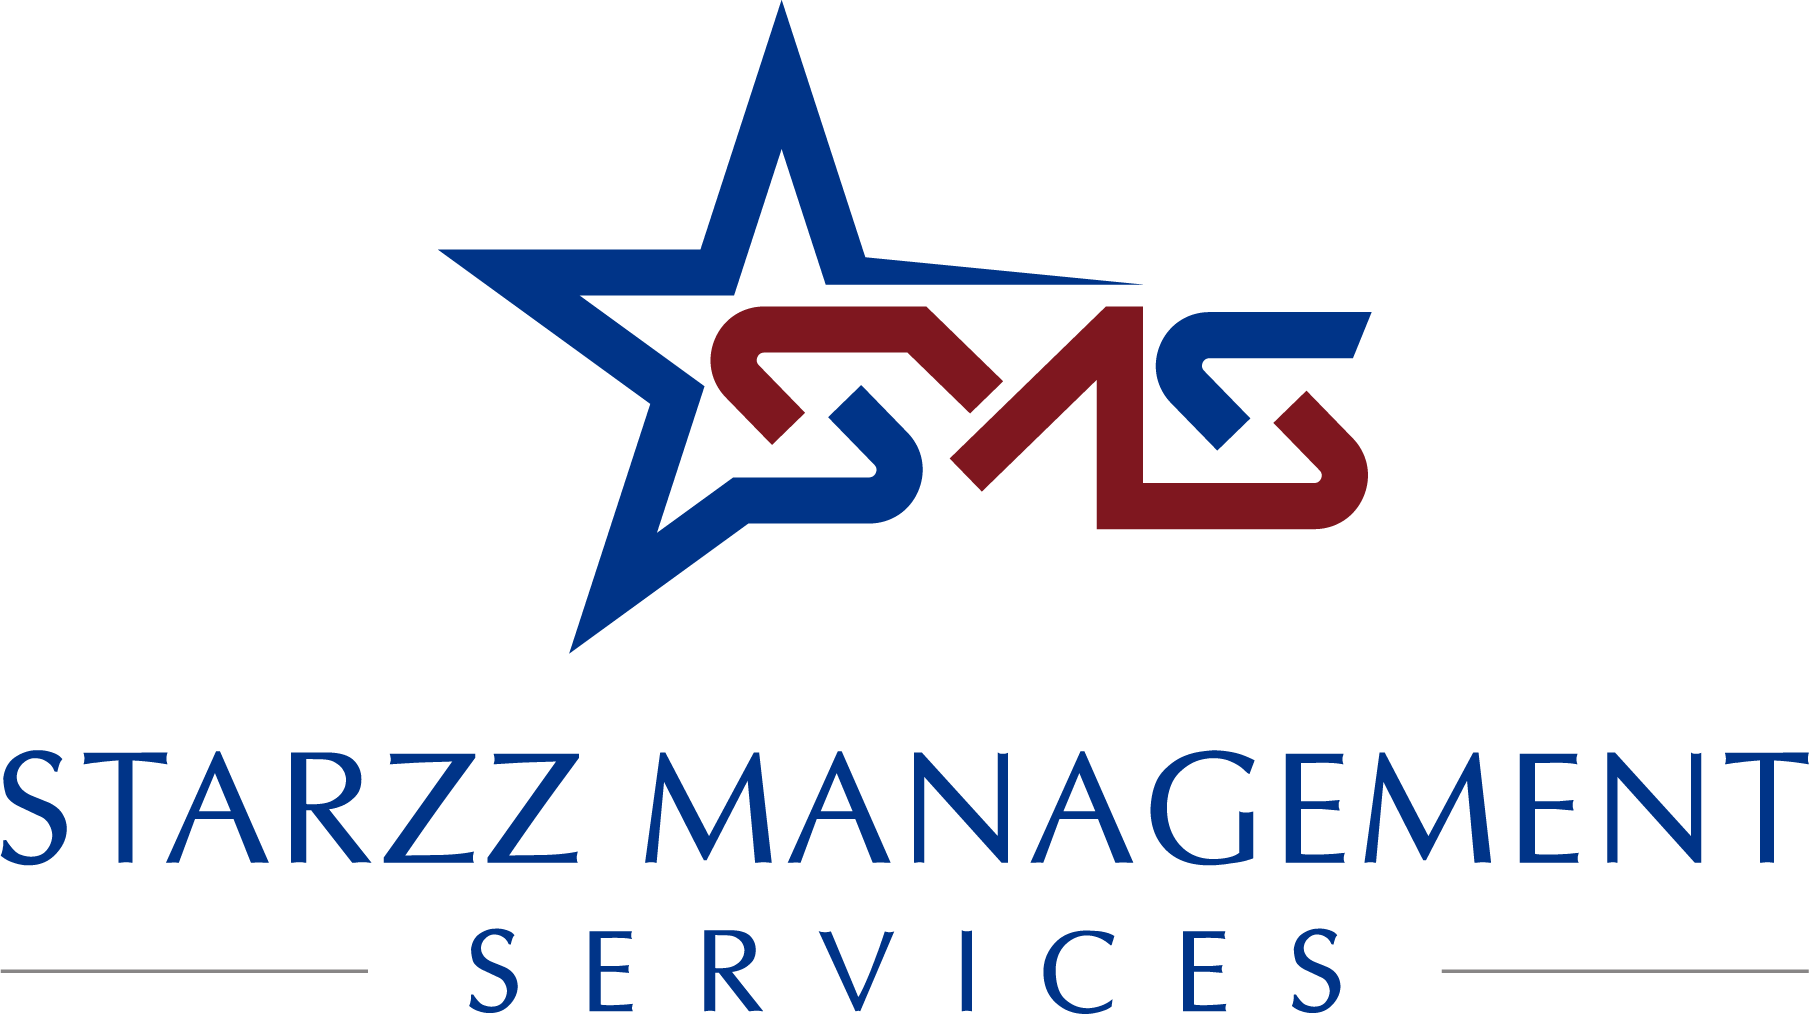 Starzz Management Services